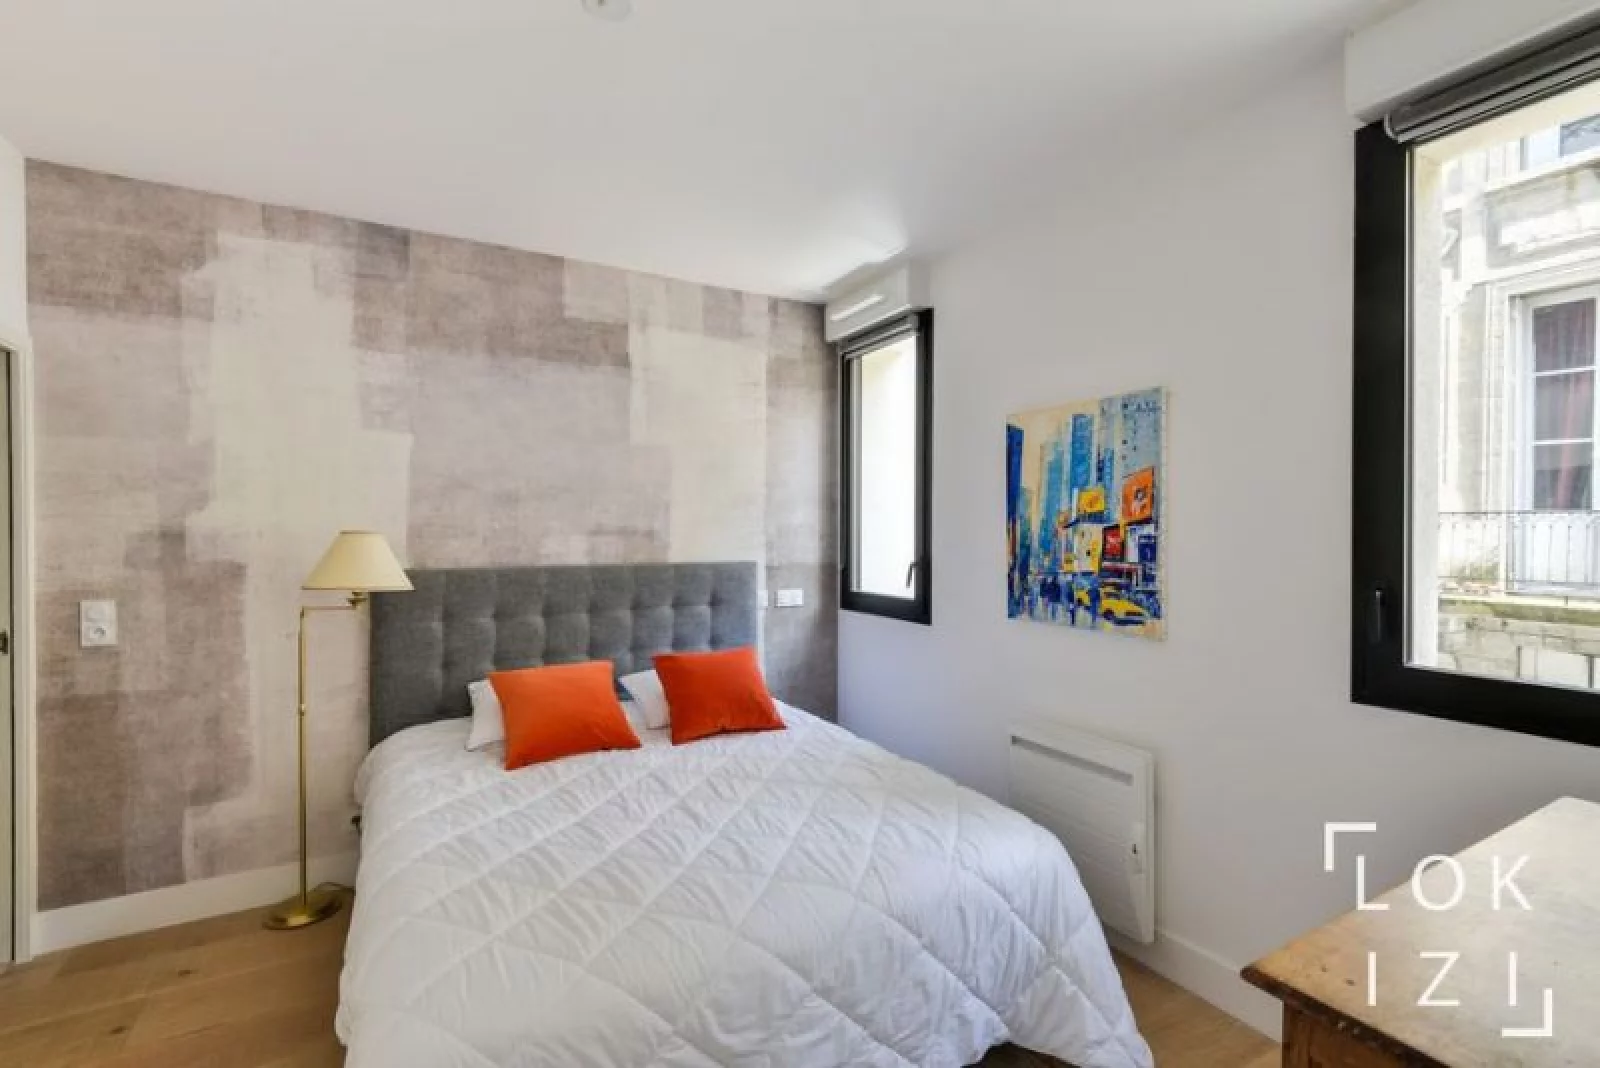 Location appartement meublé 3 pièces 70m²  (Bordeaux centre - Pey Berland)